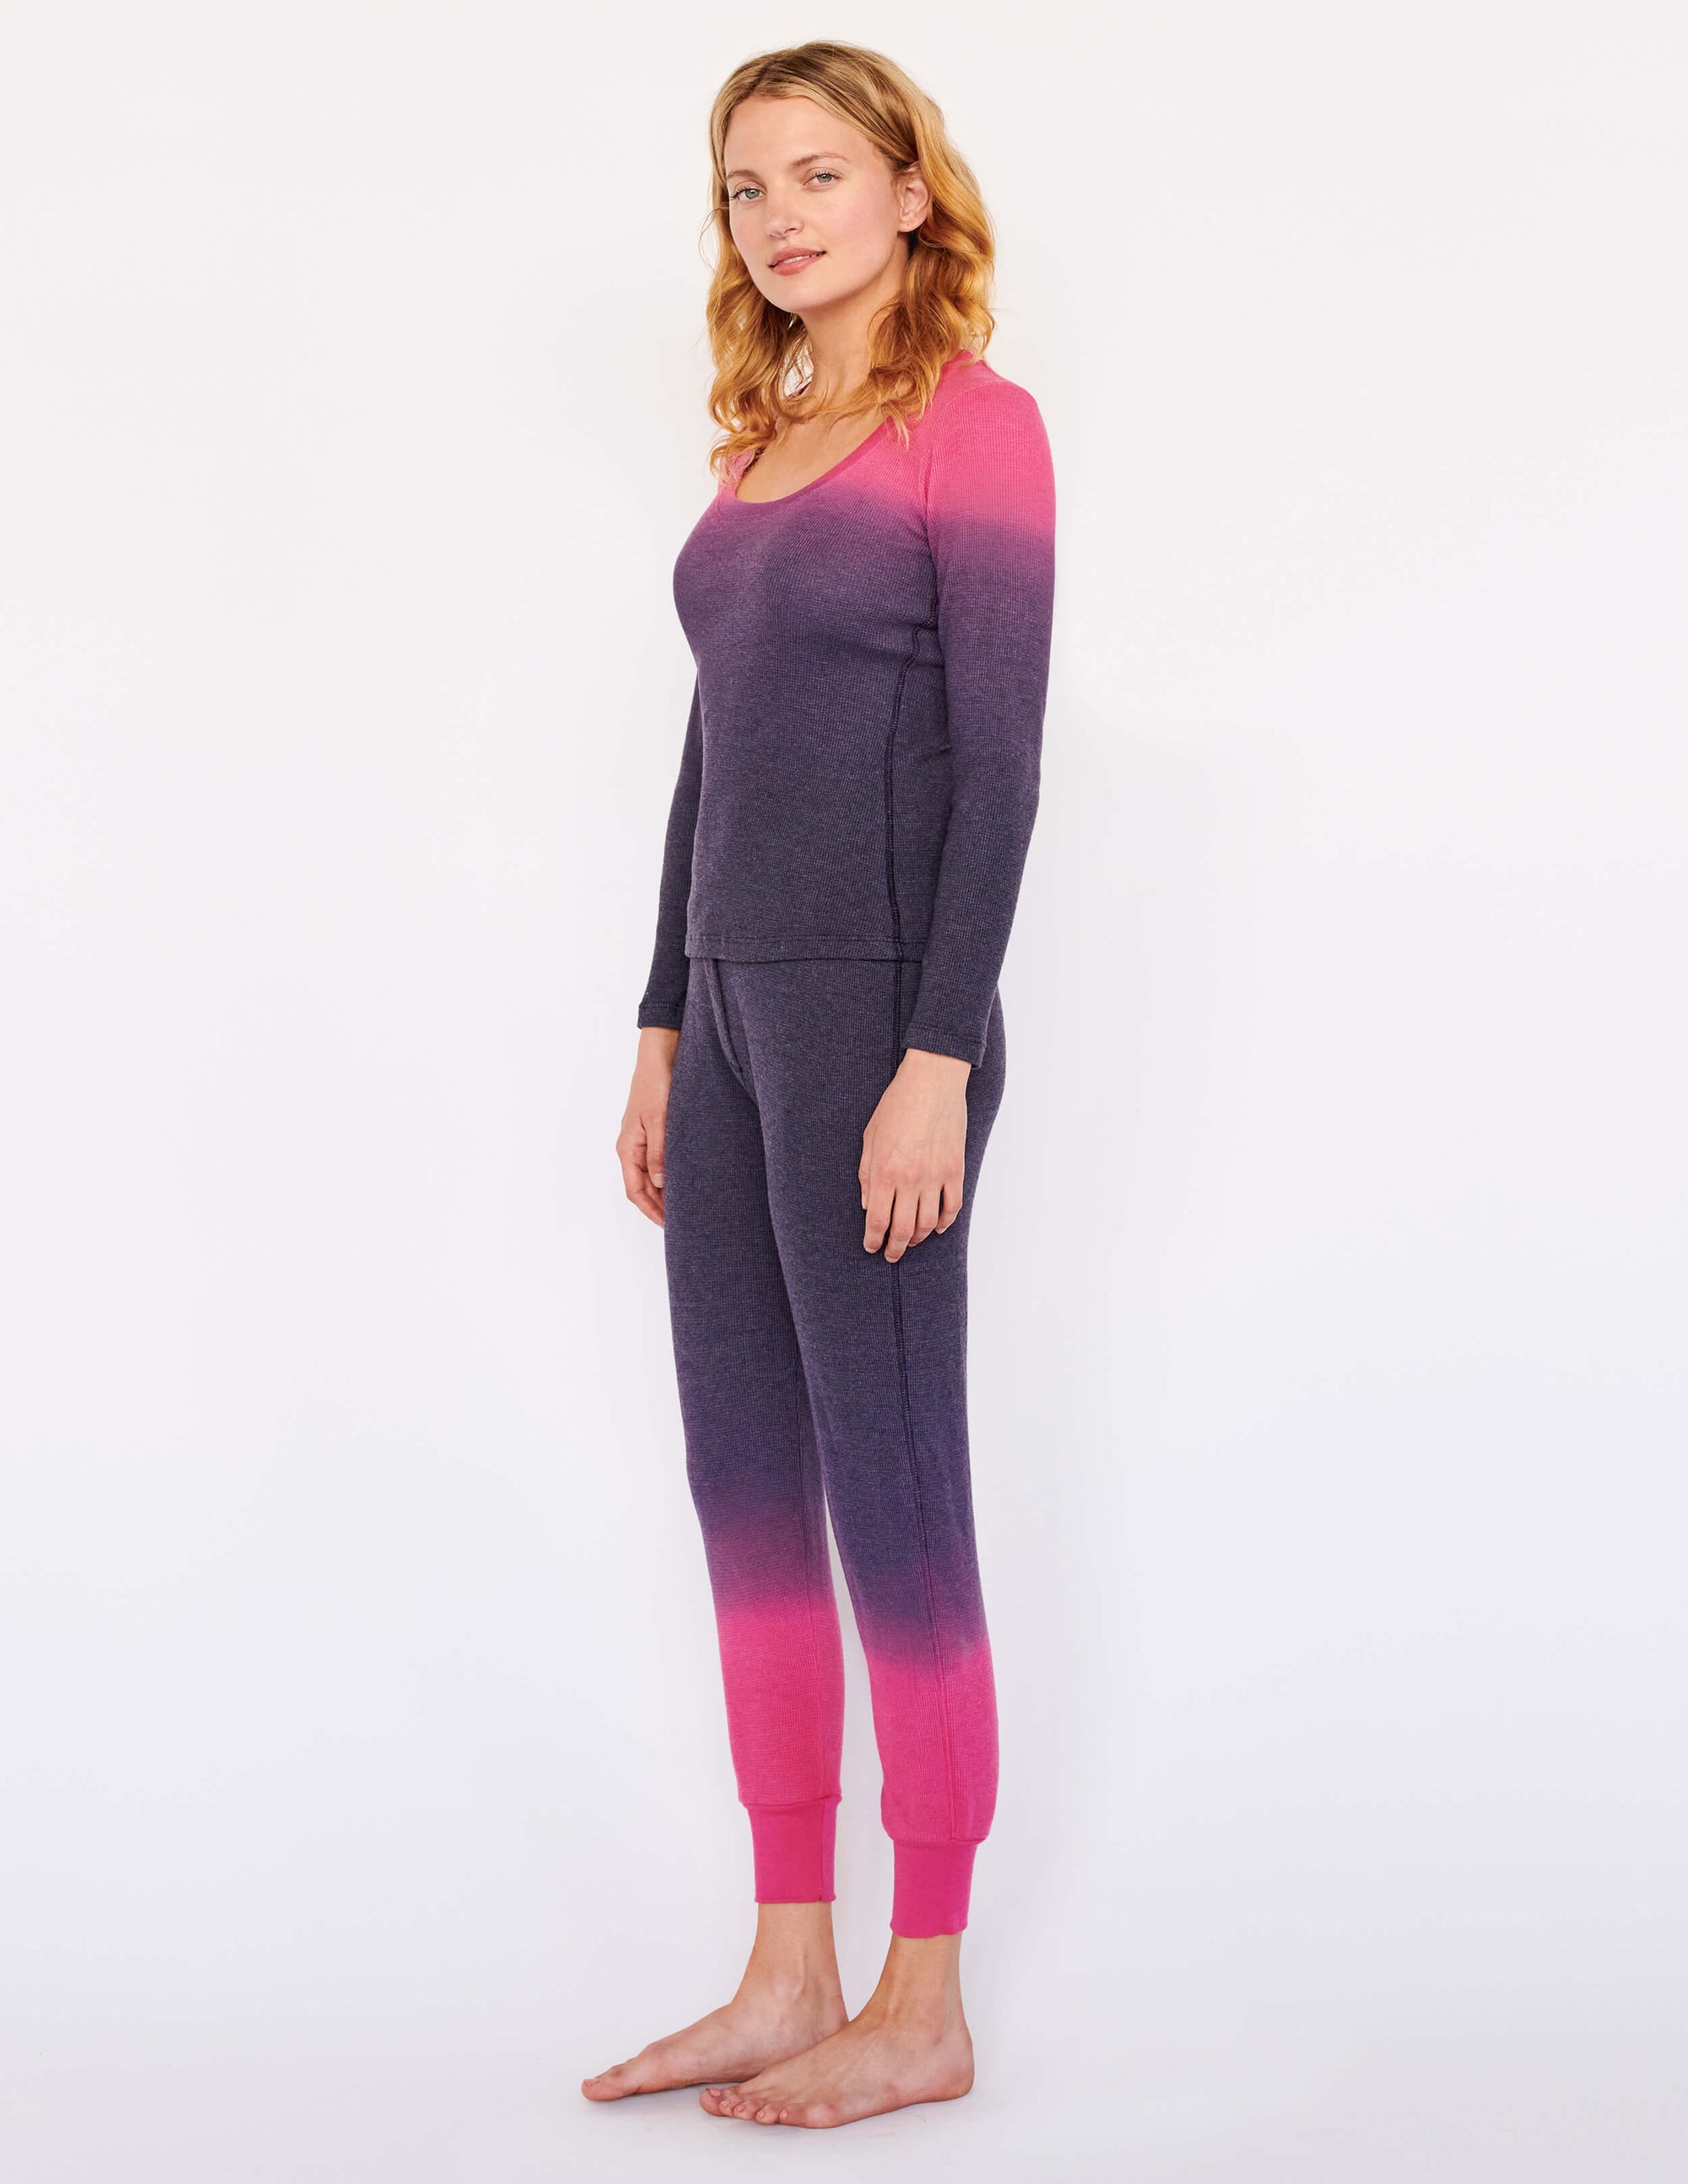 Thermal 2 Piece Pajama Set - Women's Loungewear - Sundry